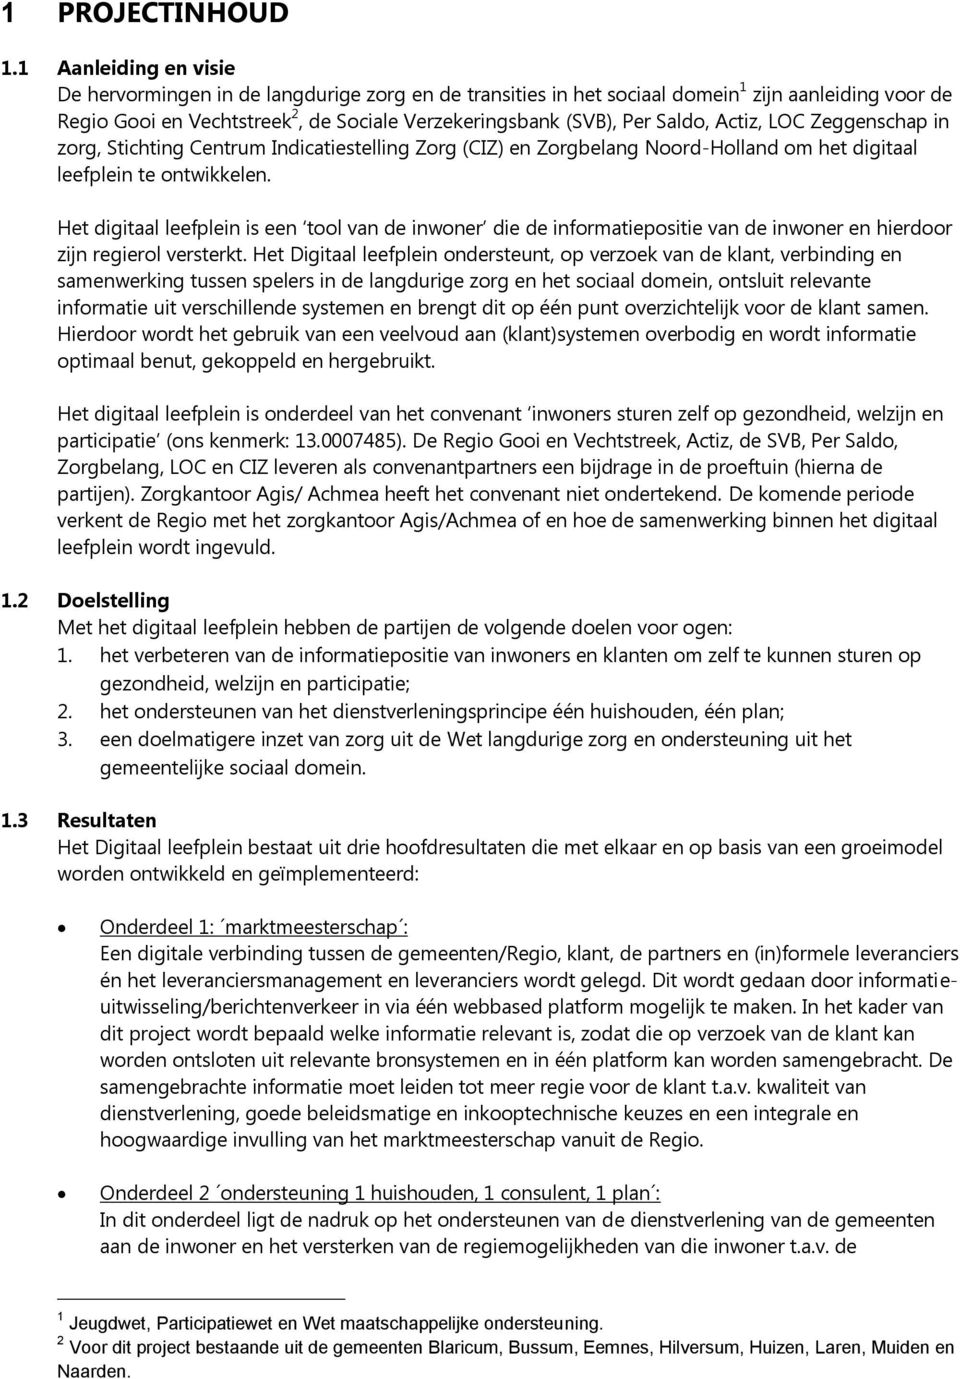 Actiz, LOC Zeggenschap in zorg, Stichting Centrum Indicatiestelling Zorg (CIZ) en Zorgbelang Noord-Holland om het digitaal leefplein te ontwikkelen.